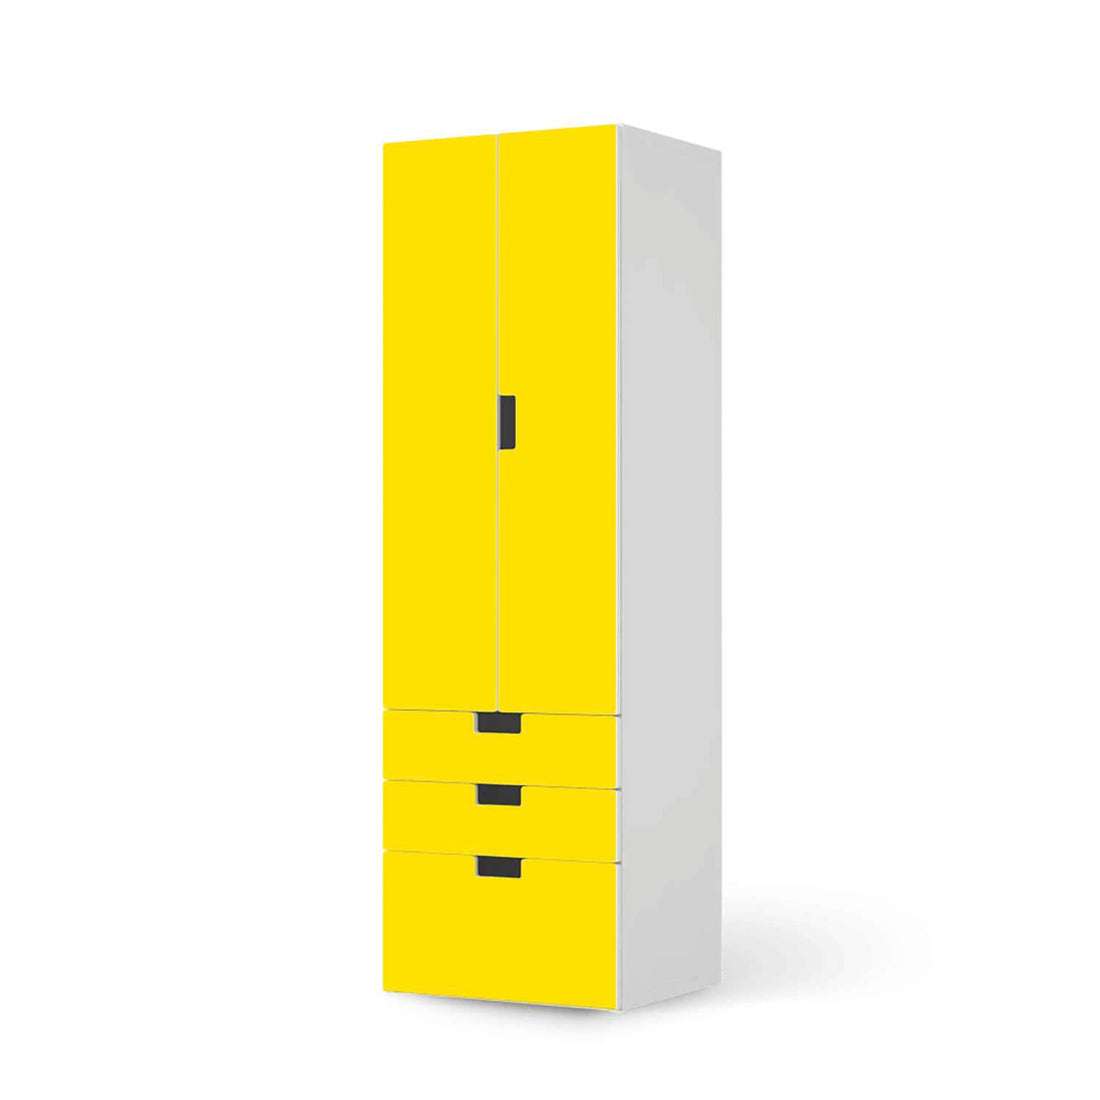 Klebefolie Gelb Dark - IKEA Stuva kombiniert - 3 Schubladen und 2 große Türen (Kombination 1)  - weiss